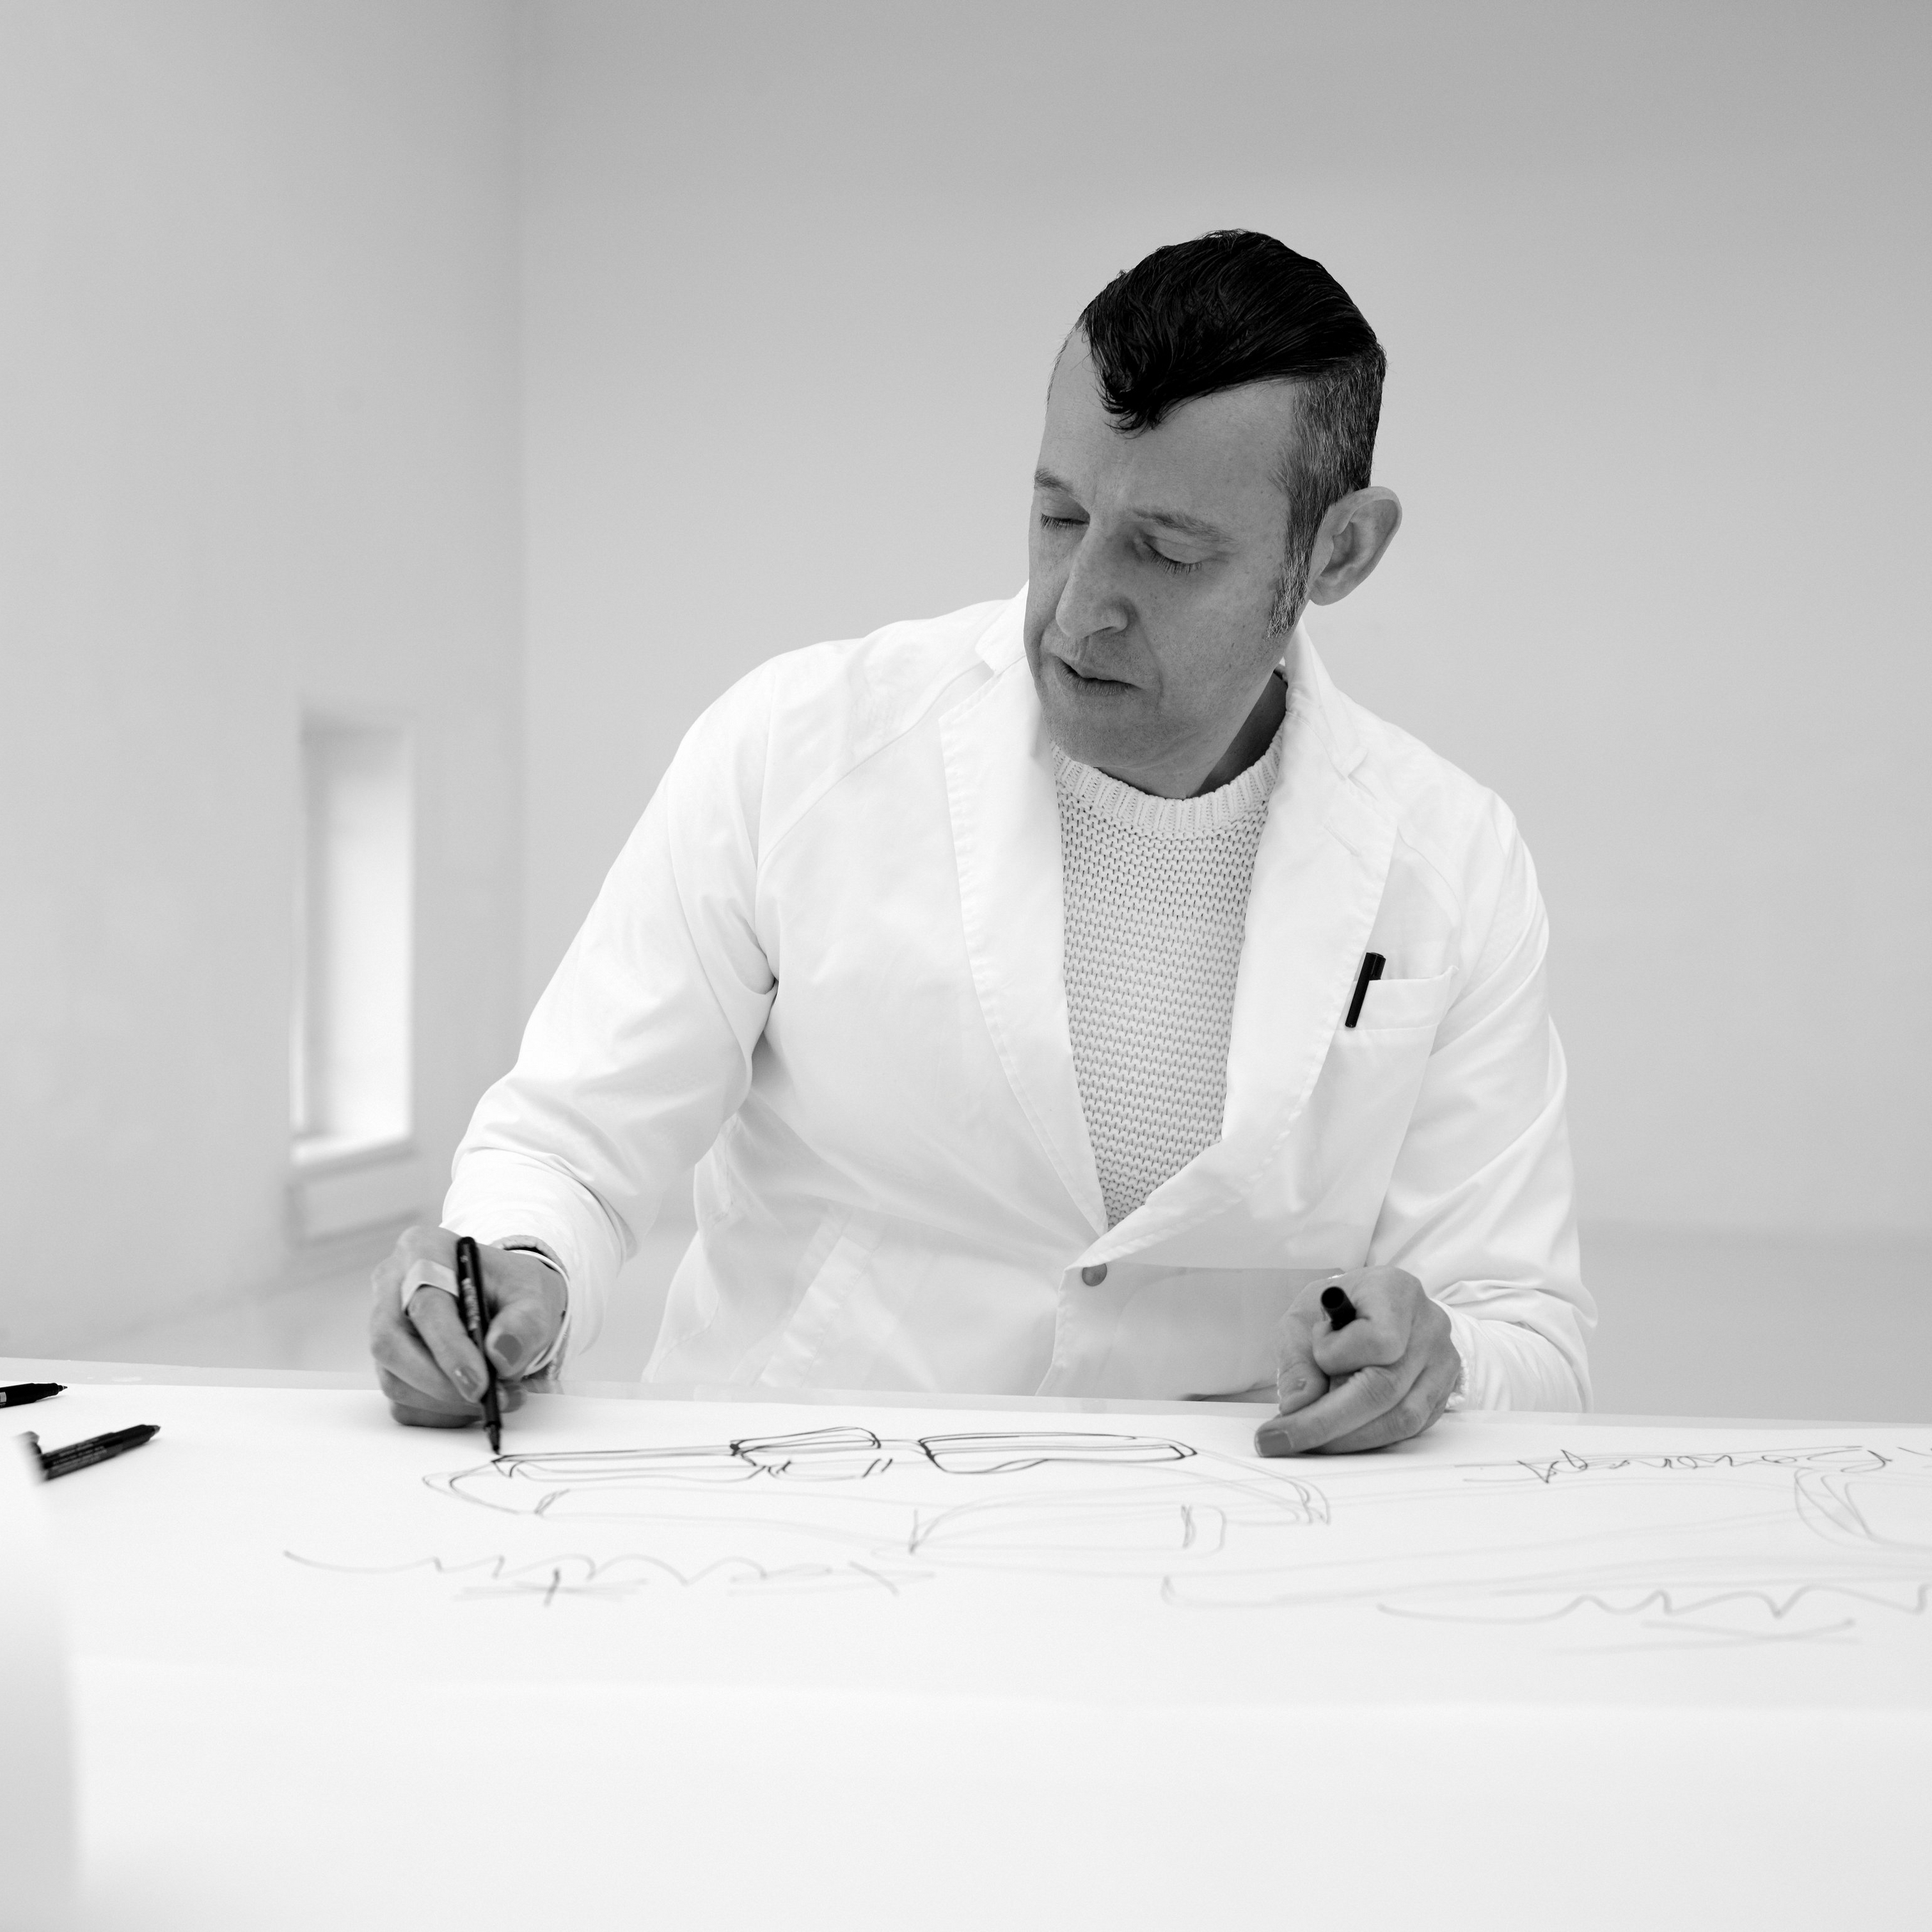 Designer Karim Rashid